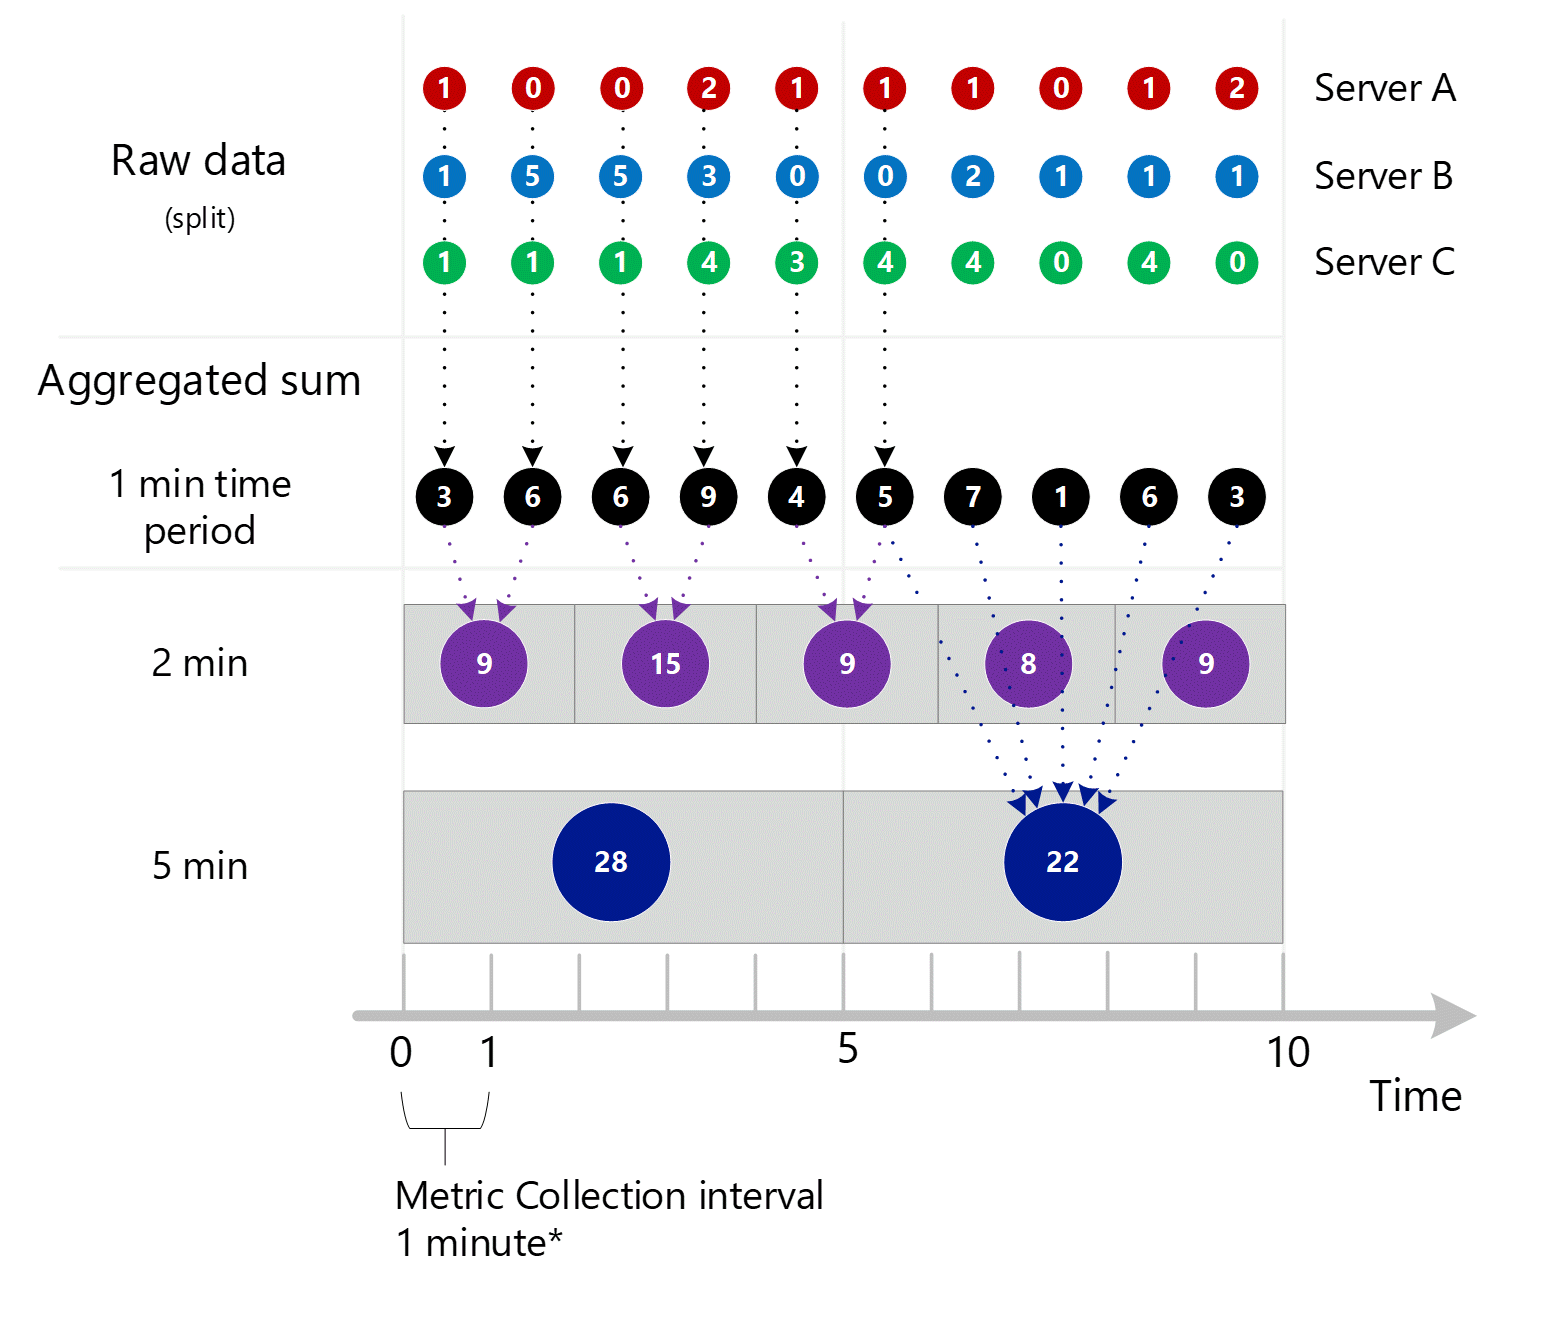 前の 3 つのスクリーンショットを統合して示すスクリーンショット。1 分、2 分および 5 分の間隔に集計される、サーバーのディメンション全体で 1 分単位で集計された複数のエントリ。サーバー A、B、および C が個別に示されています